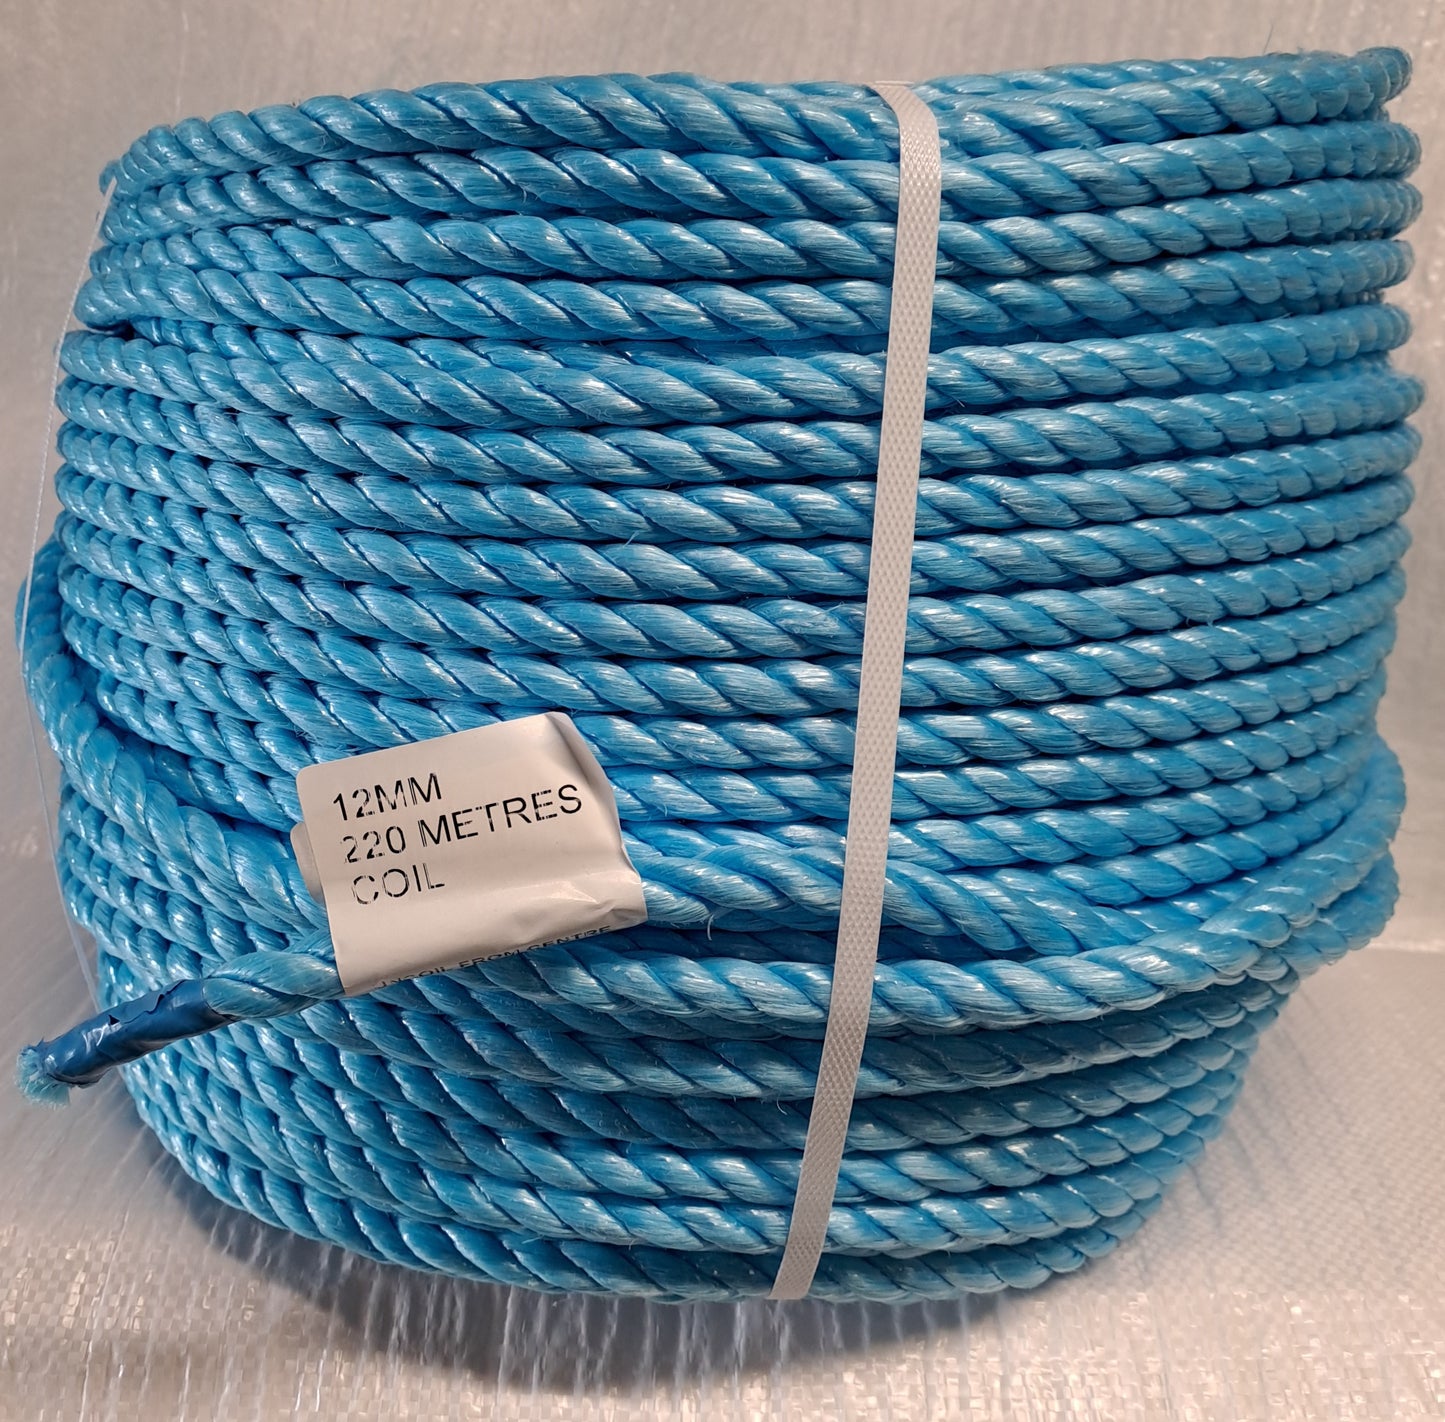 Polypropylene Rope (PP Rope) 220 metre